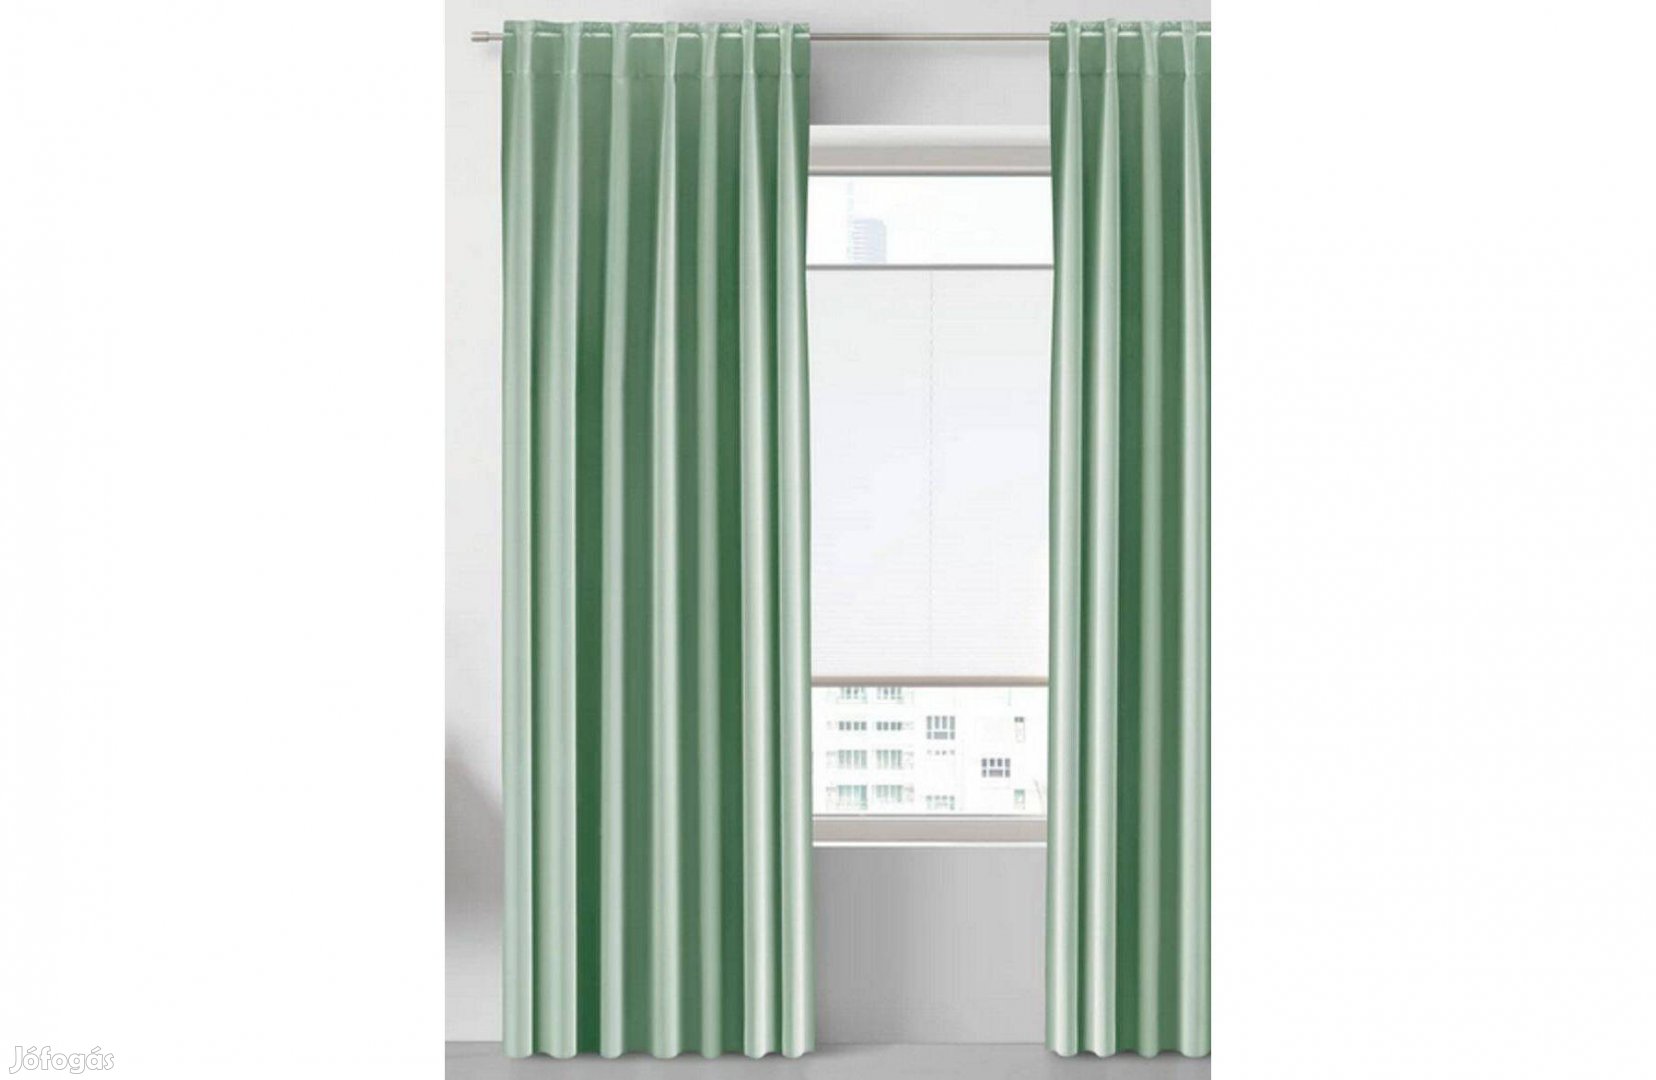 Halvány zöld sötétítőfüggöny 1 pár, 2 db, panel lakásba 